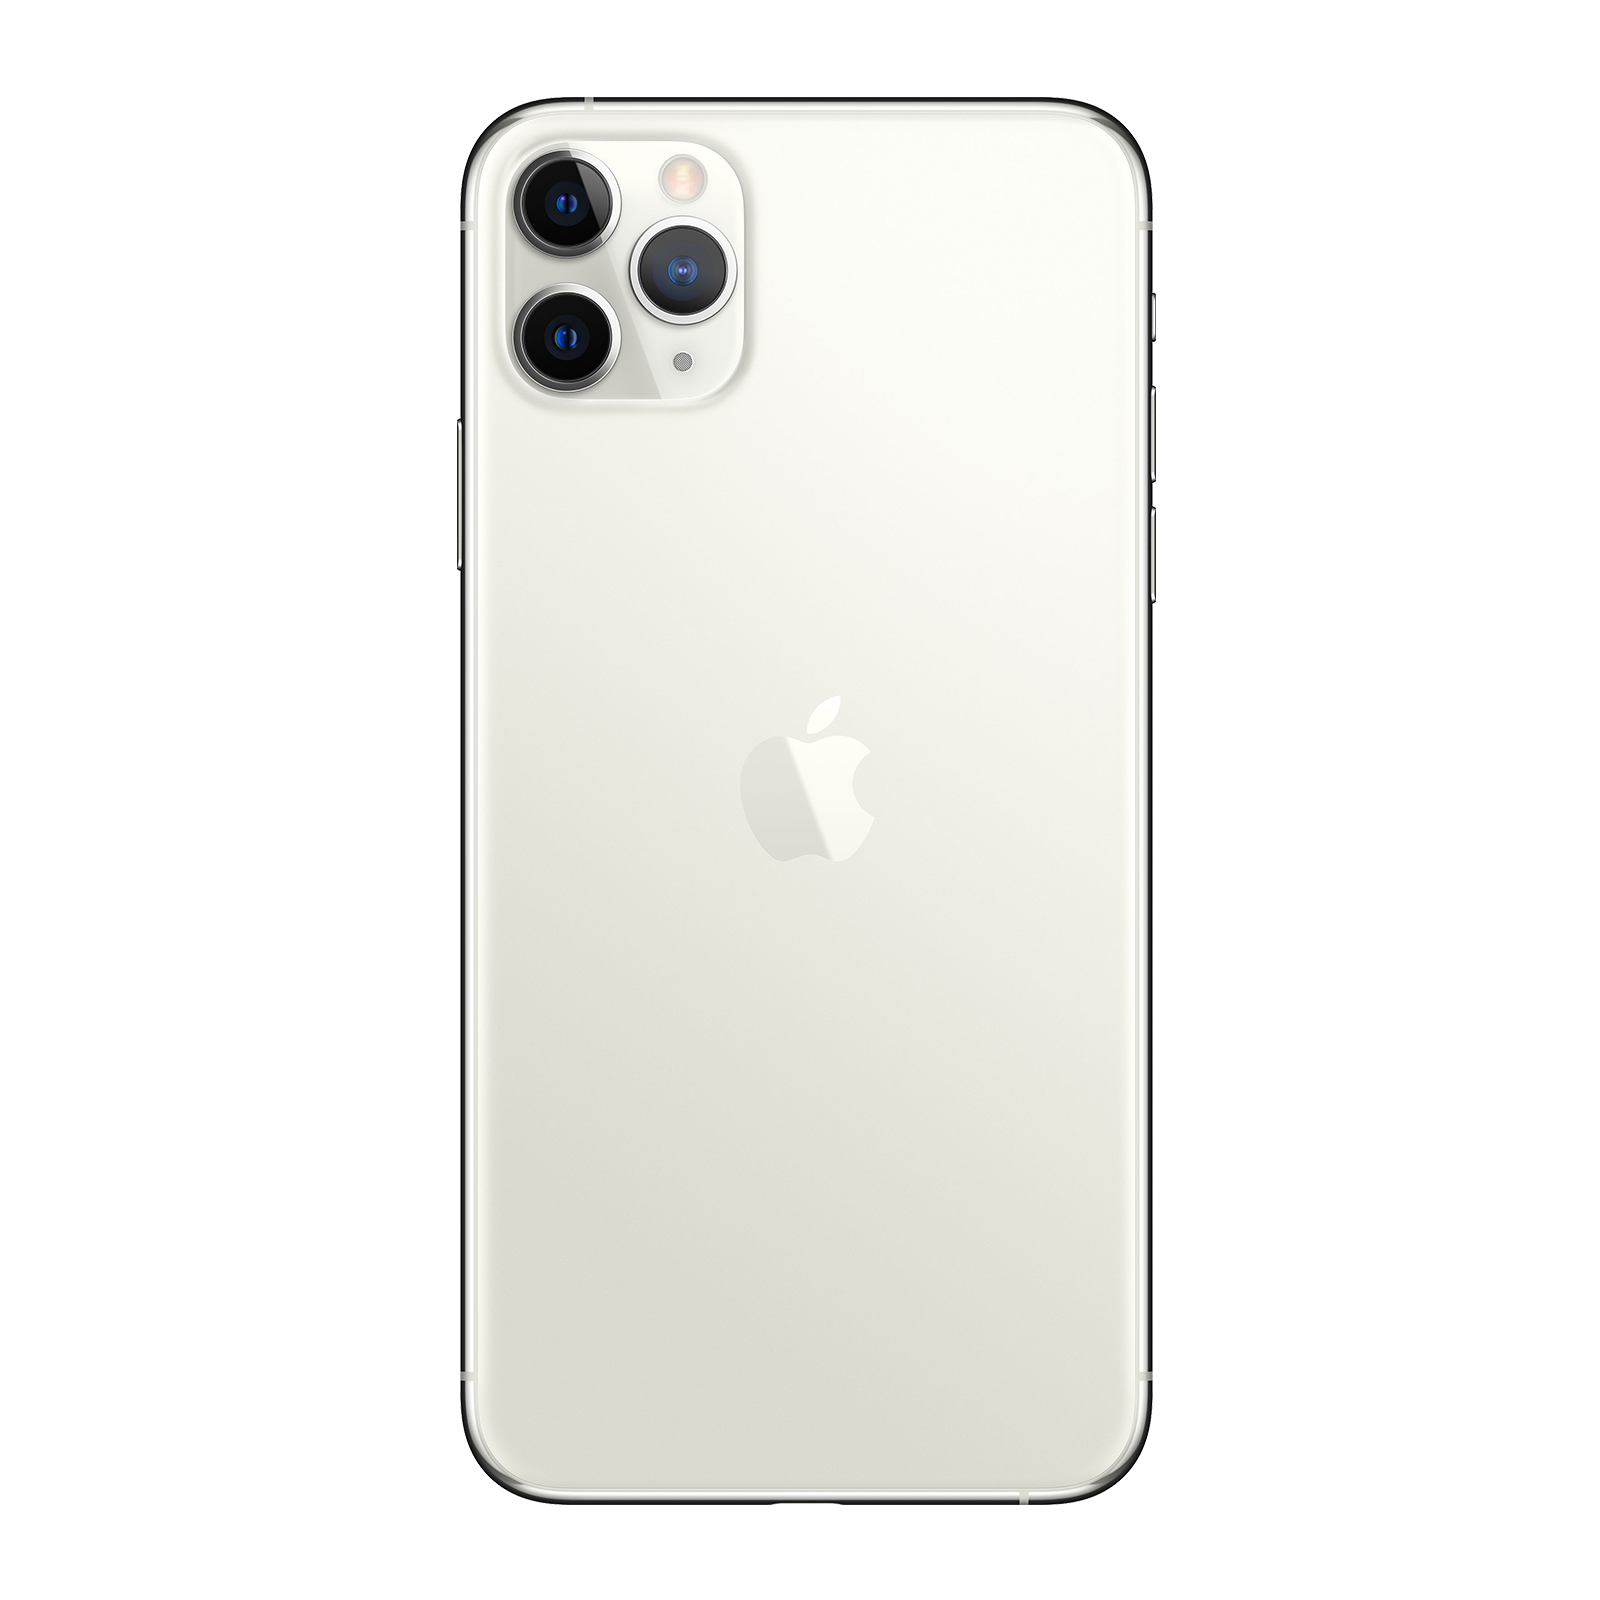 Apple iPhone 11 Pro Max 64GB Silver Pristine - Verizon